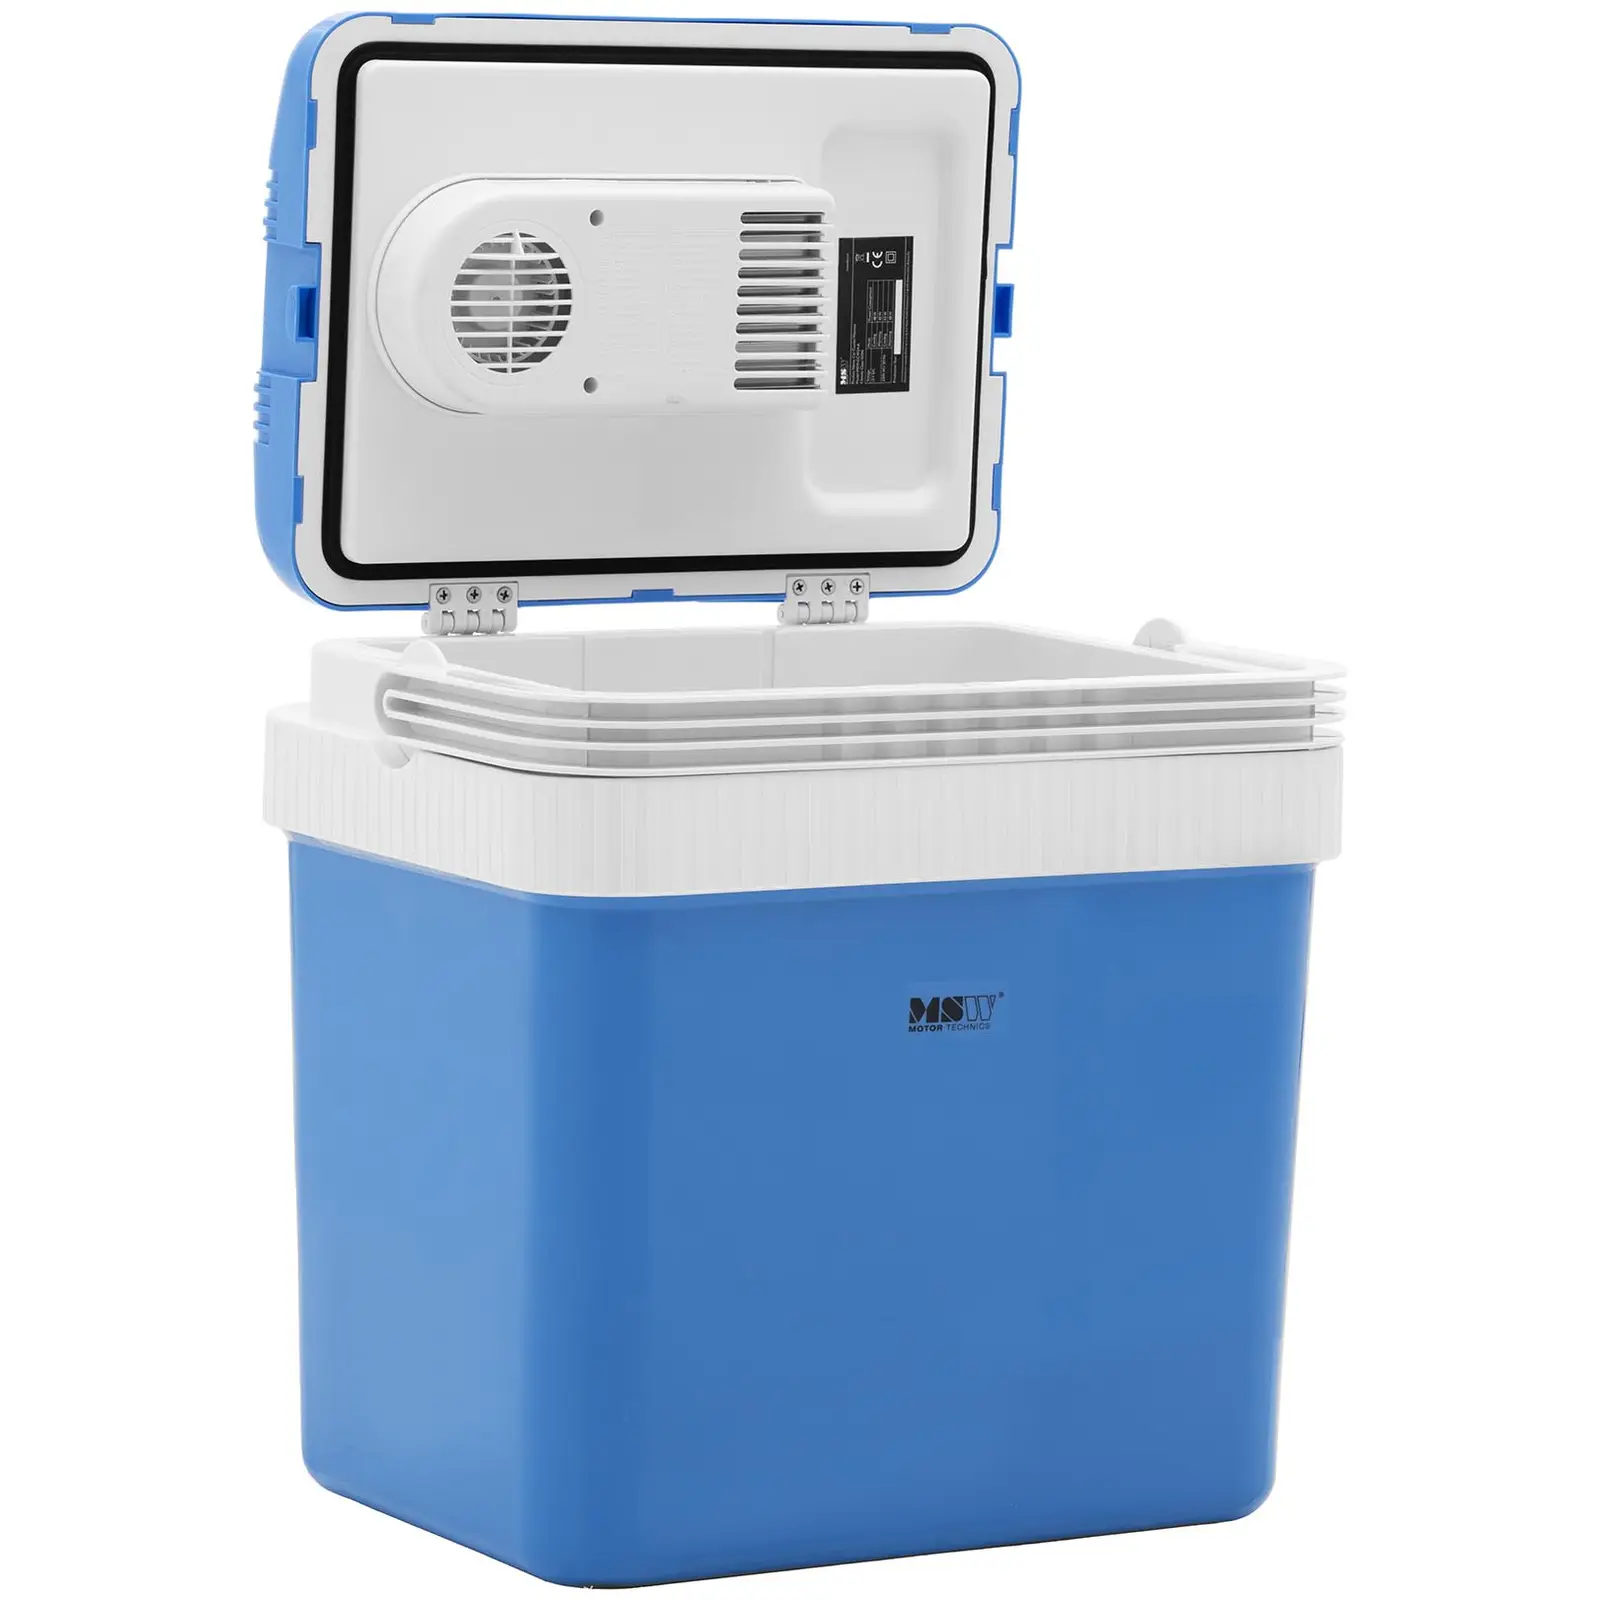 B-zboží Elektrický chladicí box 12 V / 230 V - zařízení 2 v 1 s funkcí ohřevu - 24 l